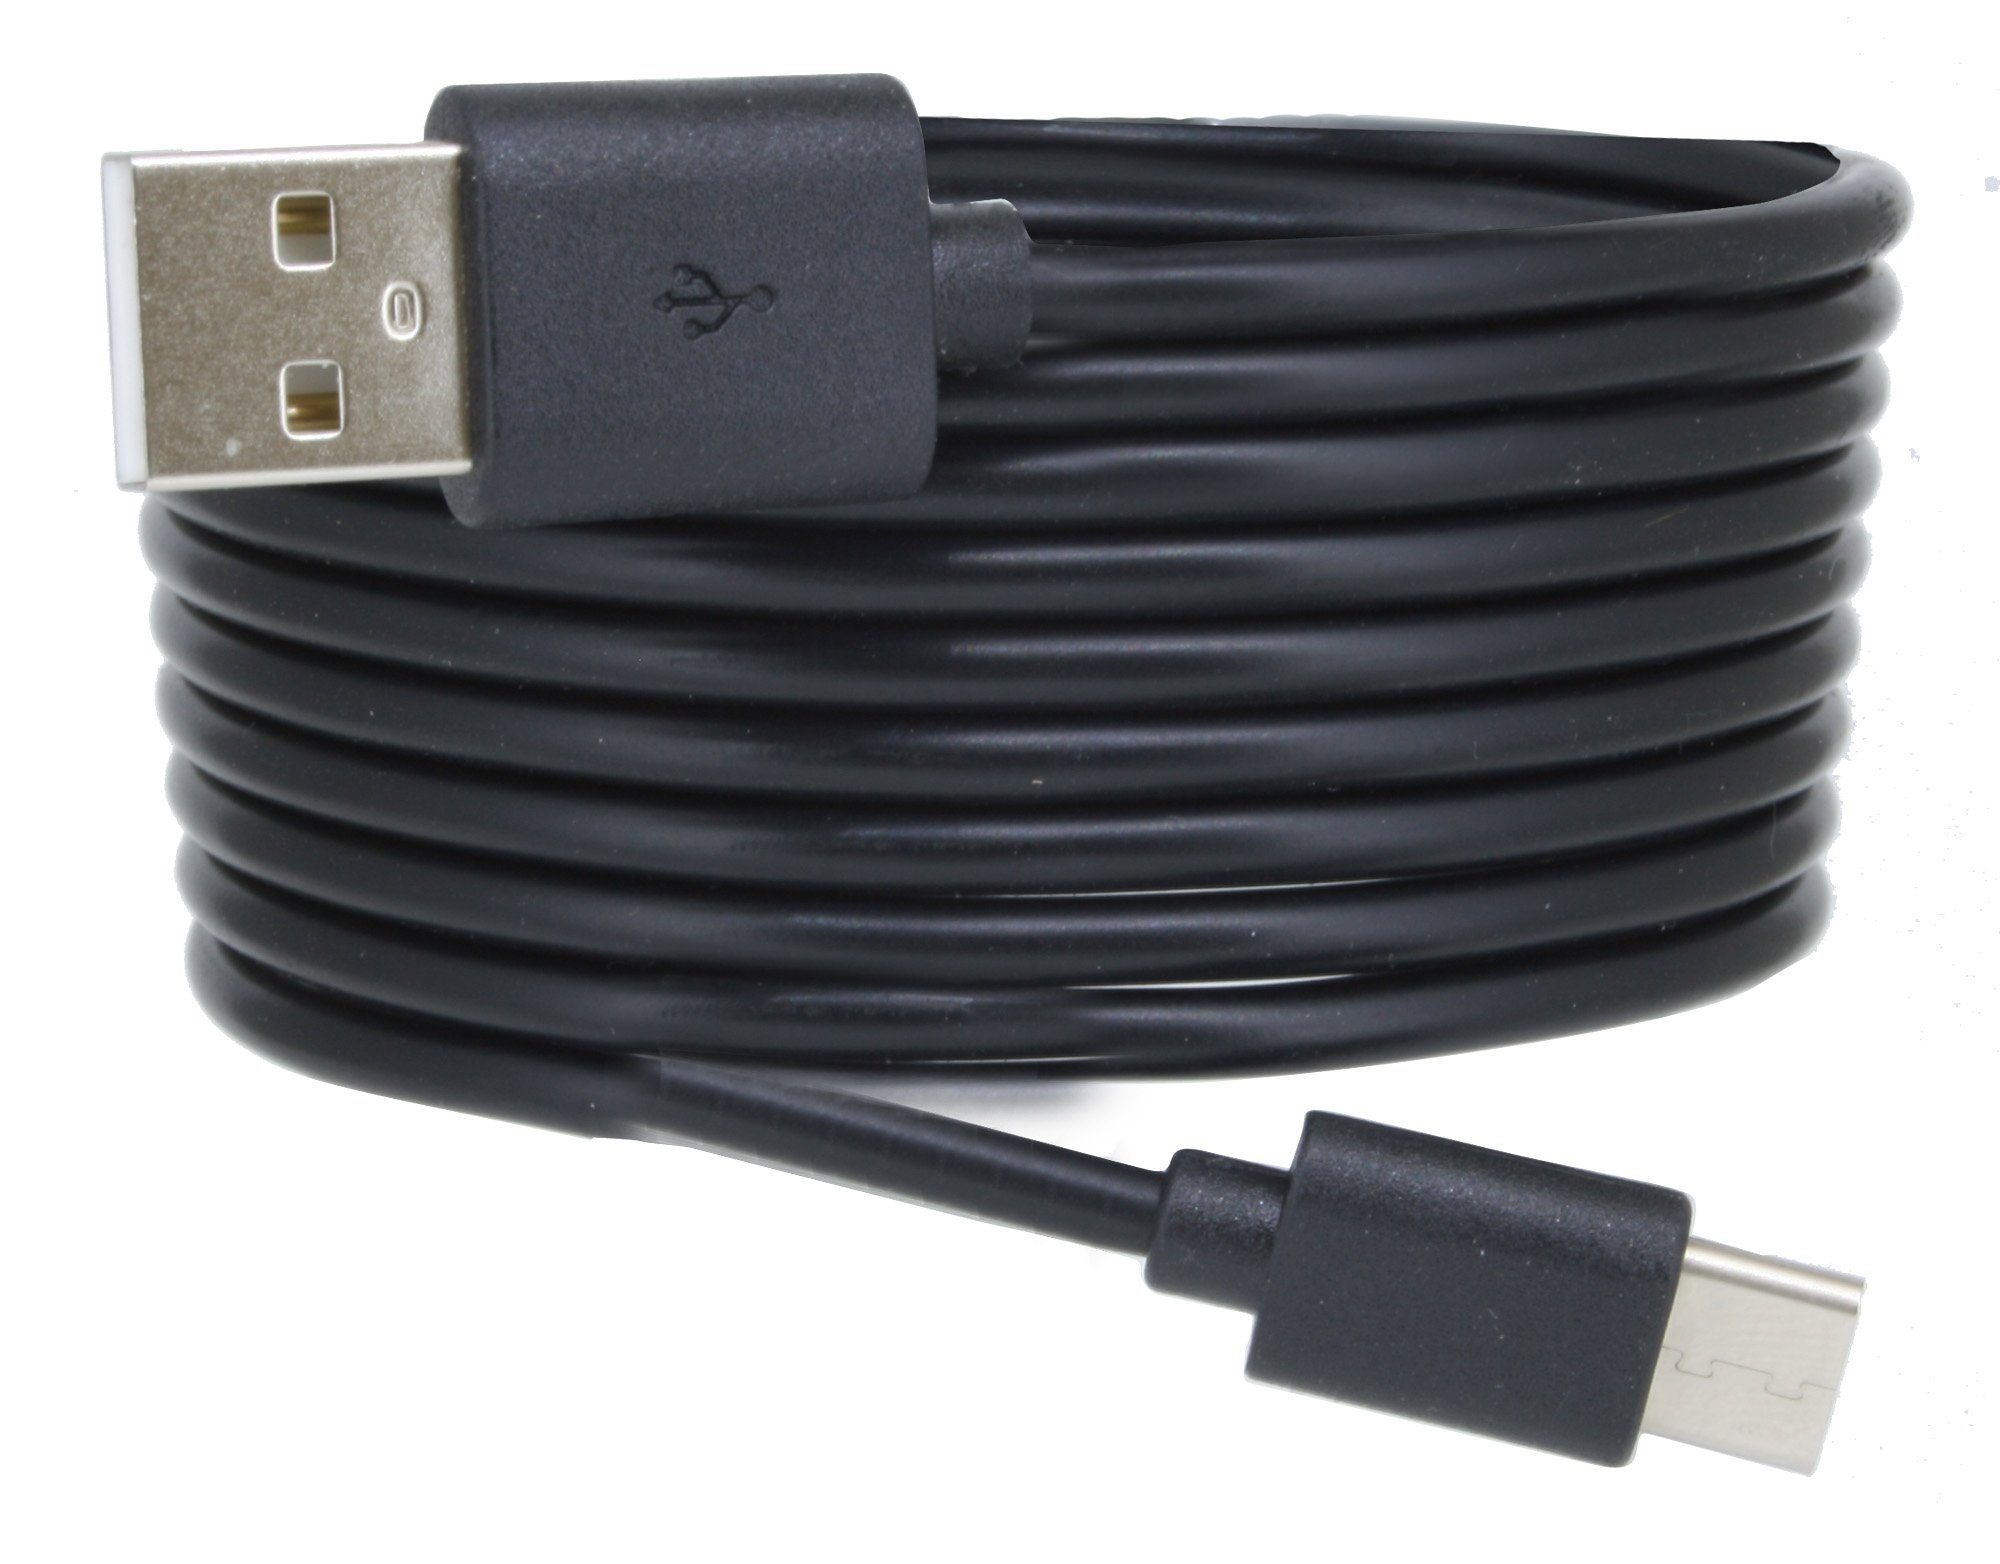 COFI 1453 USB C 3.1 Typ C Ladekabel Datenkabel 3m Extra Lang Smartphone-Kabel